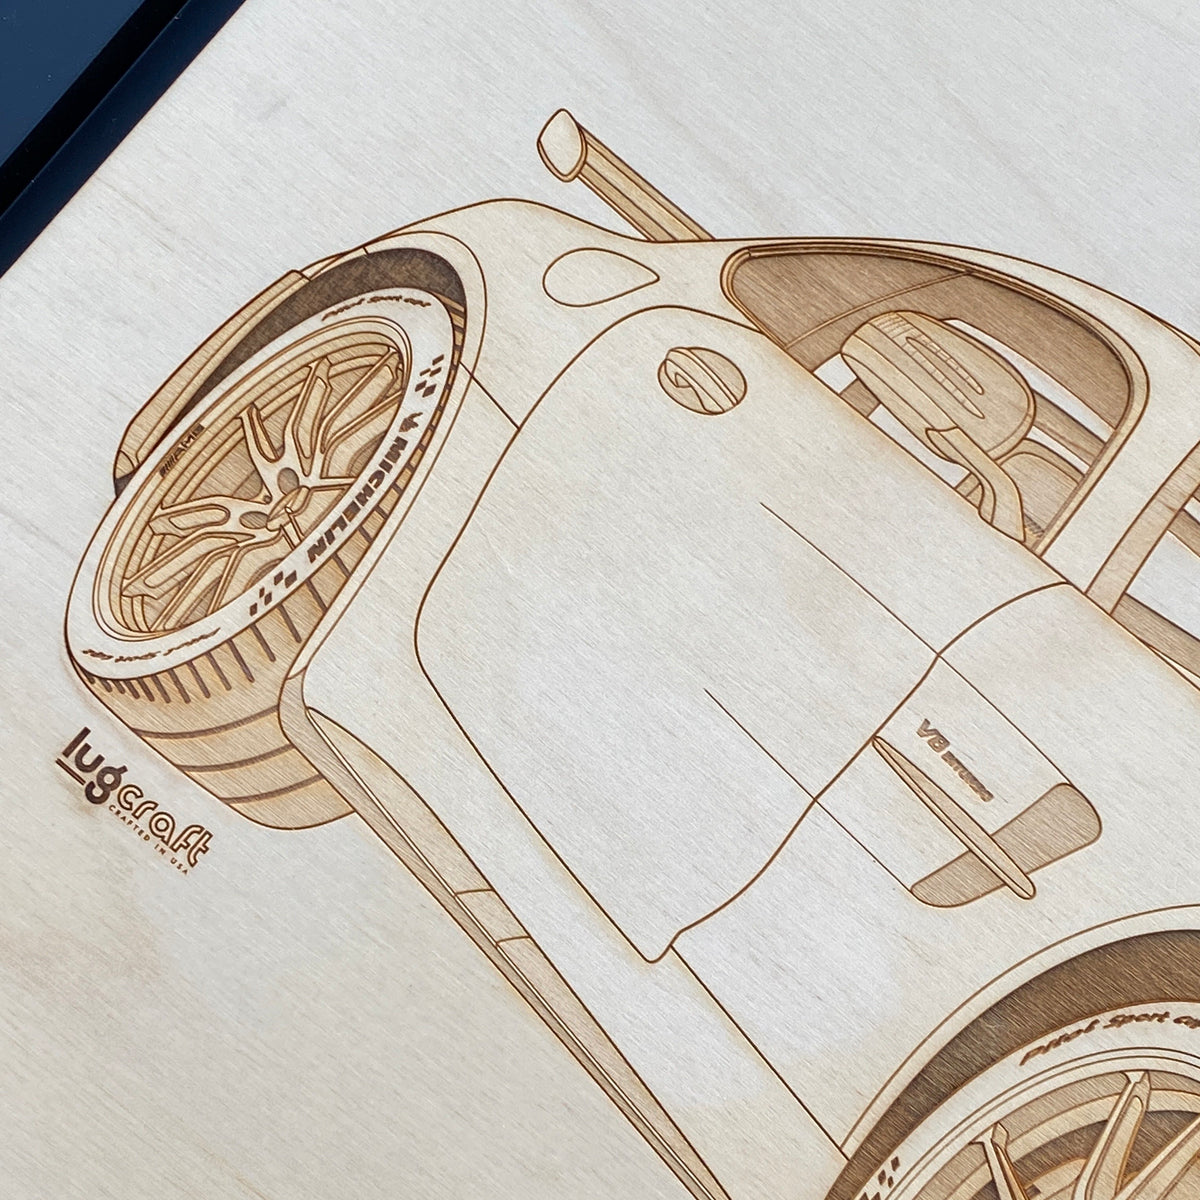 AMG GT R Pro Framed Wood Engraved Artwork